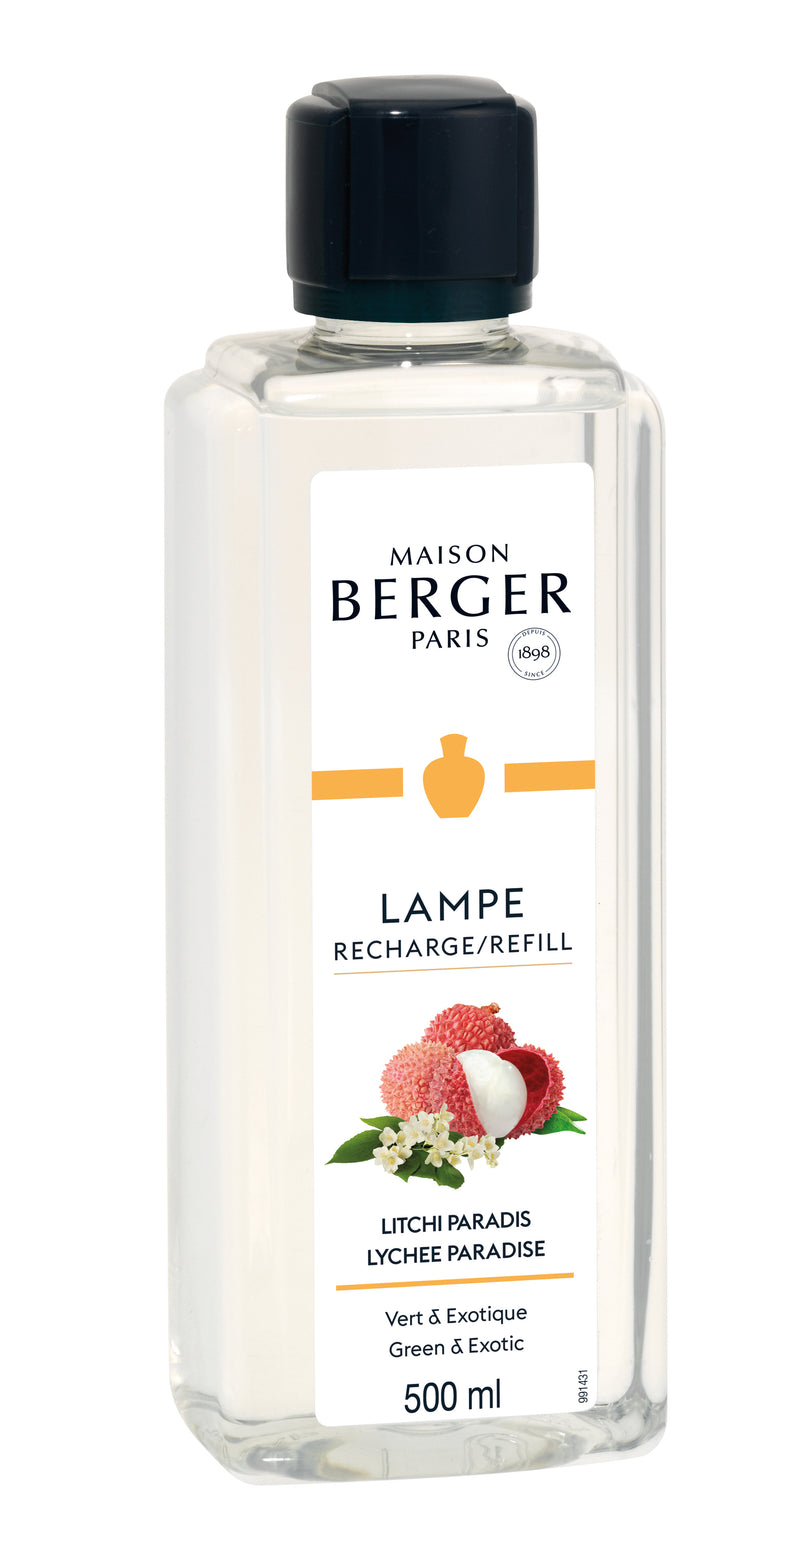 Lampe Berger huisparfum 500 ml - Lychee paradise / Litchi Paradis